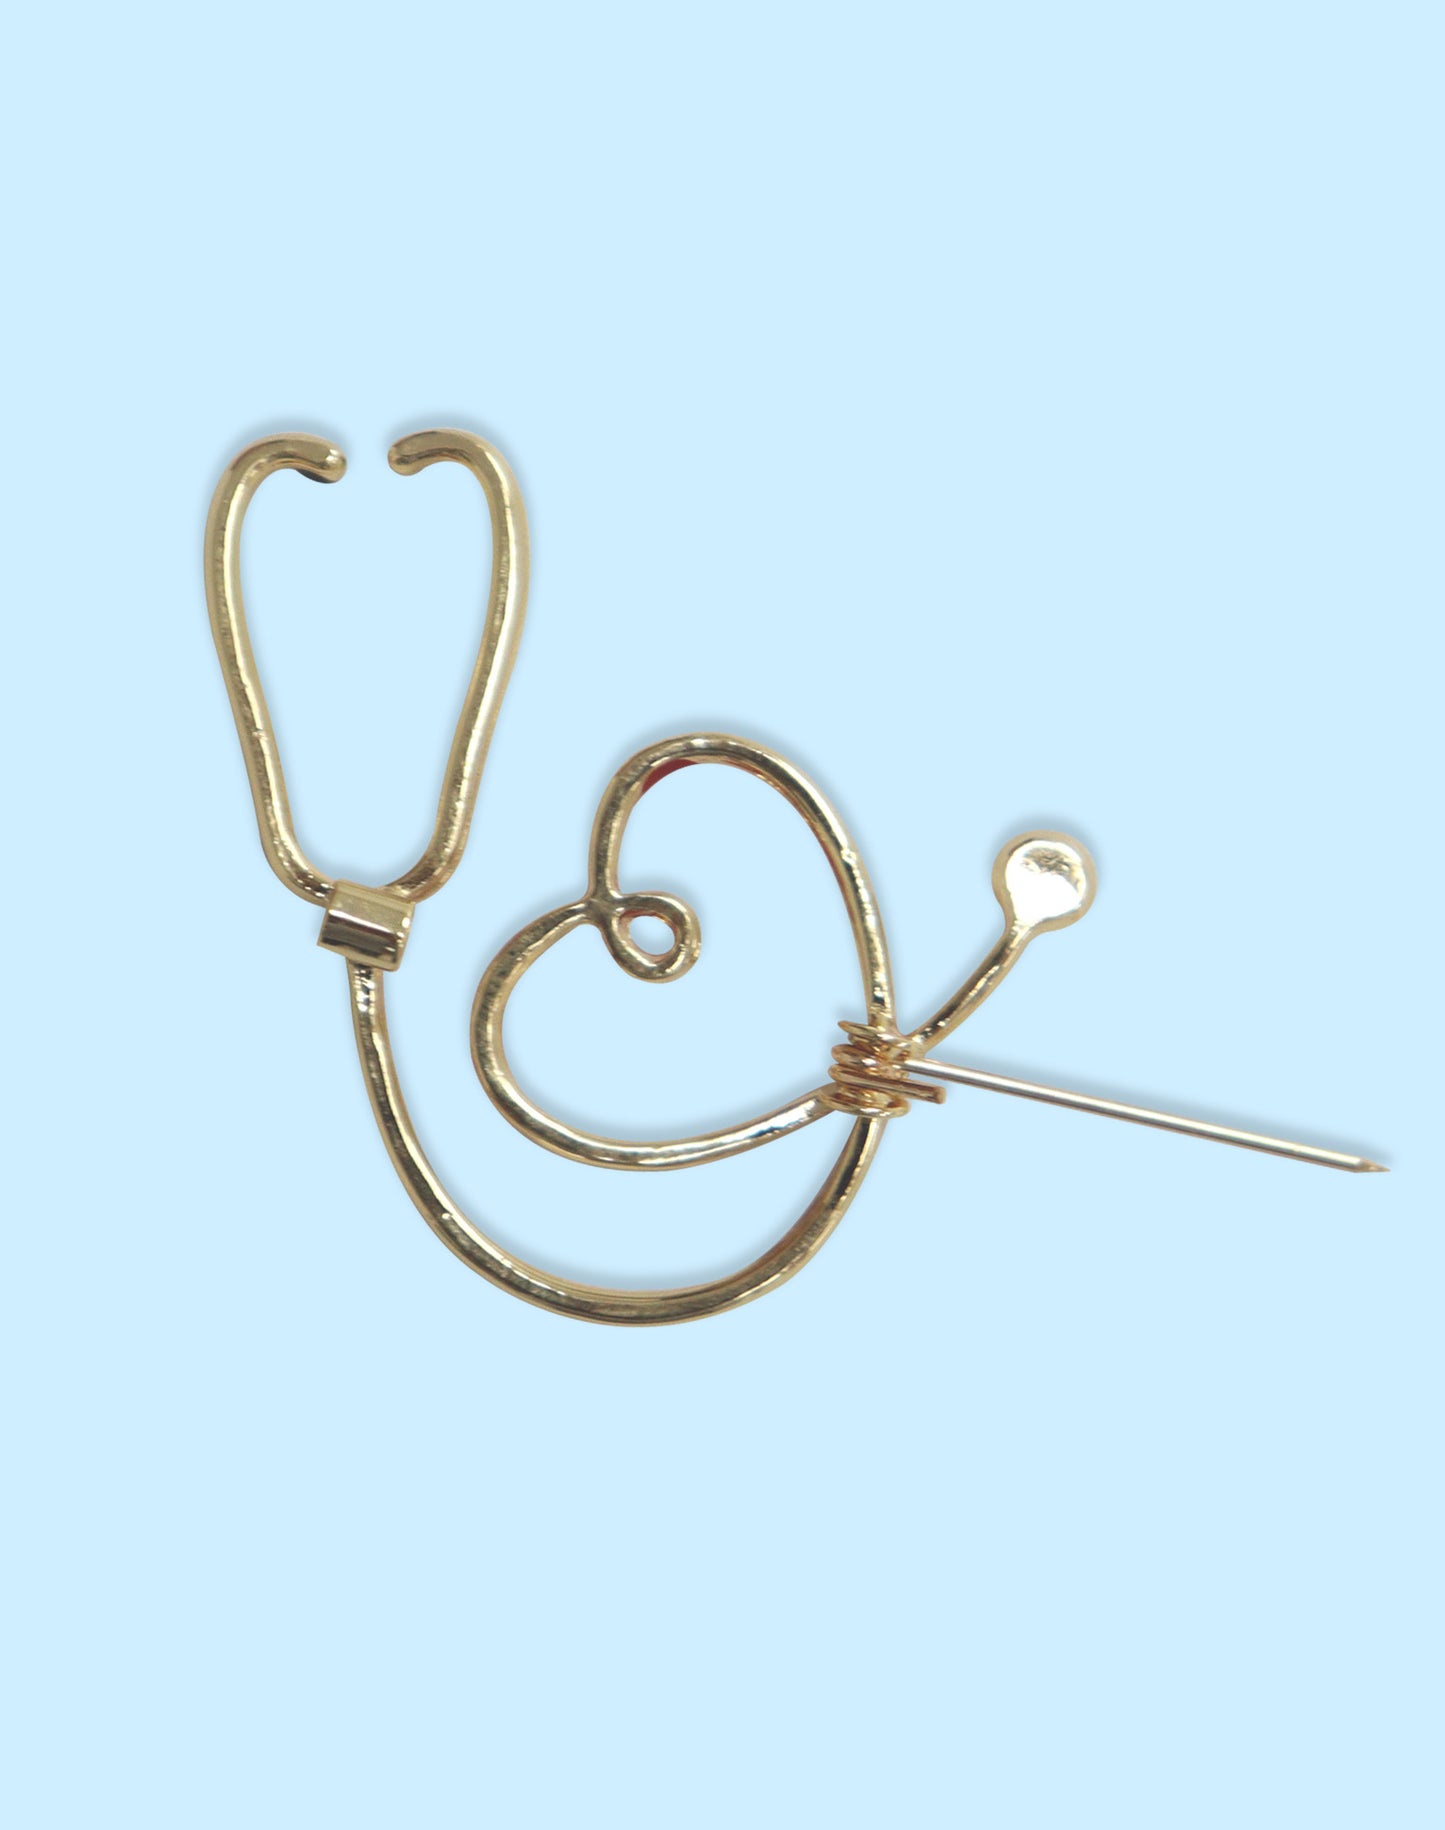 Steth Heart Brooch Pin